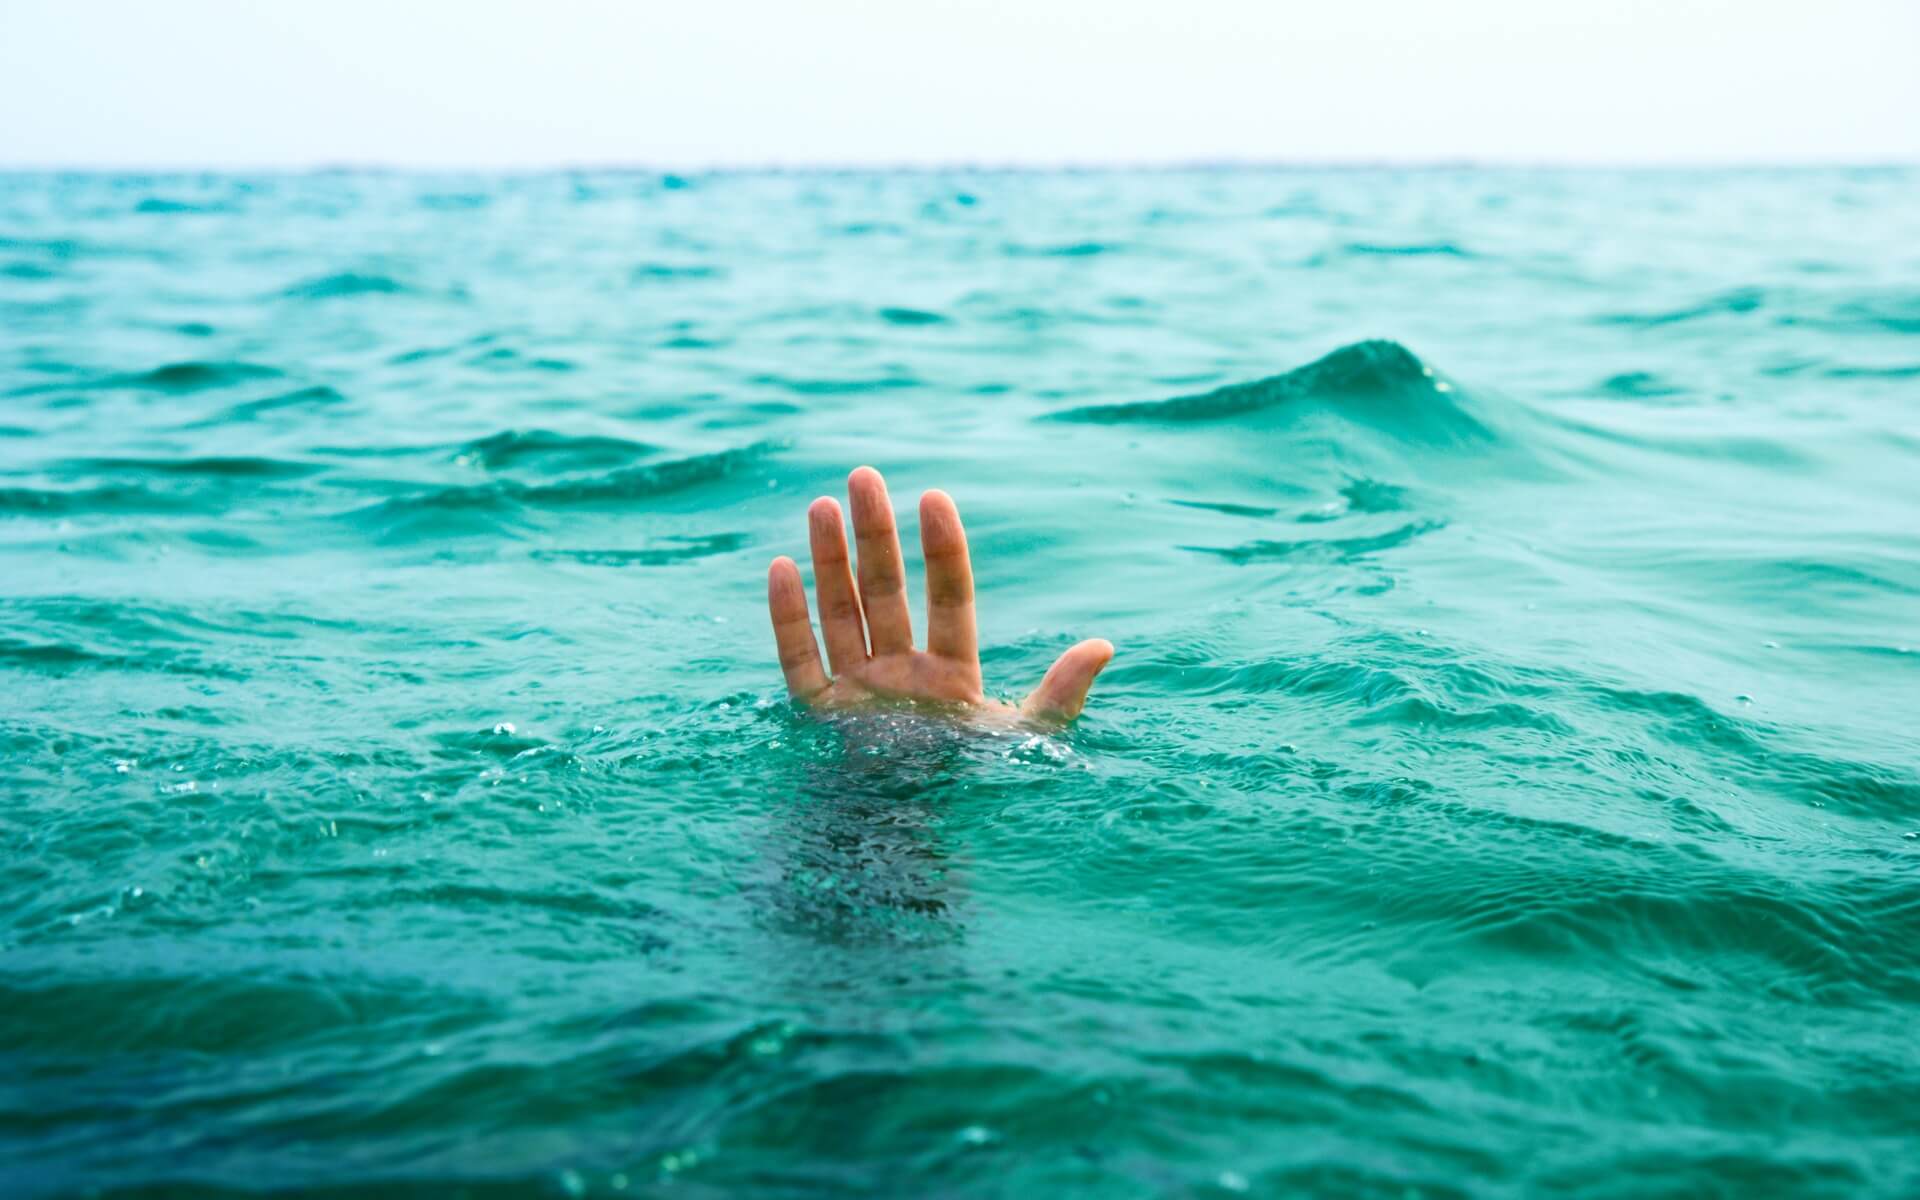 มนุษยชาติสามารถอยู่ใต้น้ำได้หรือไม่?